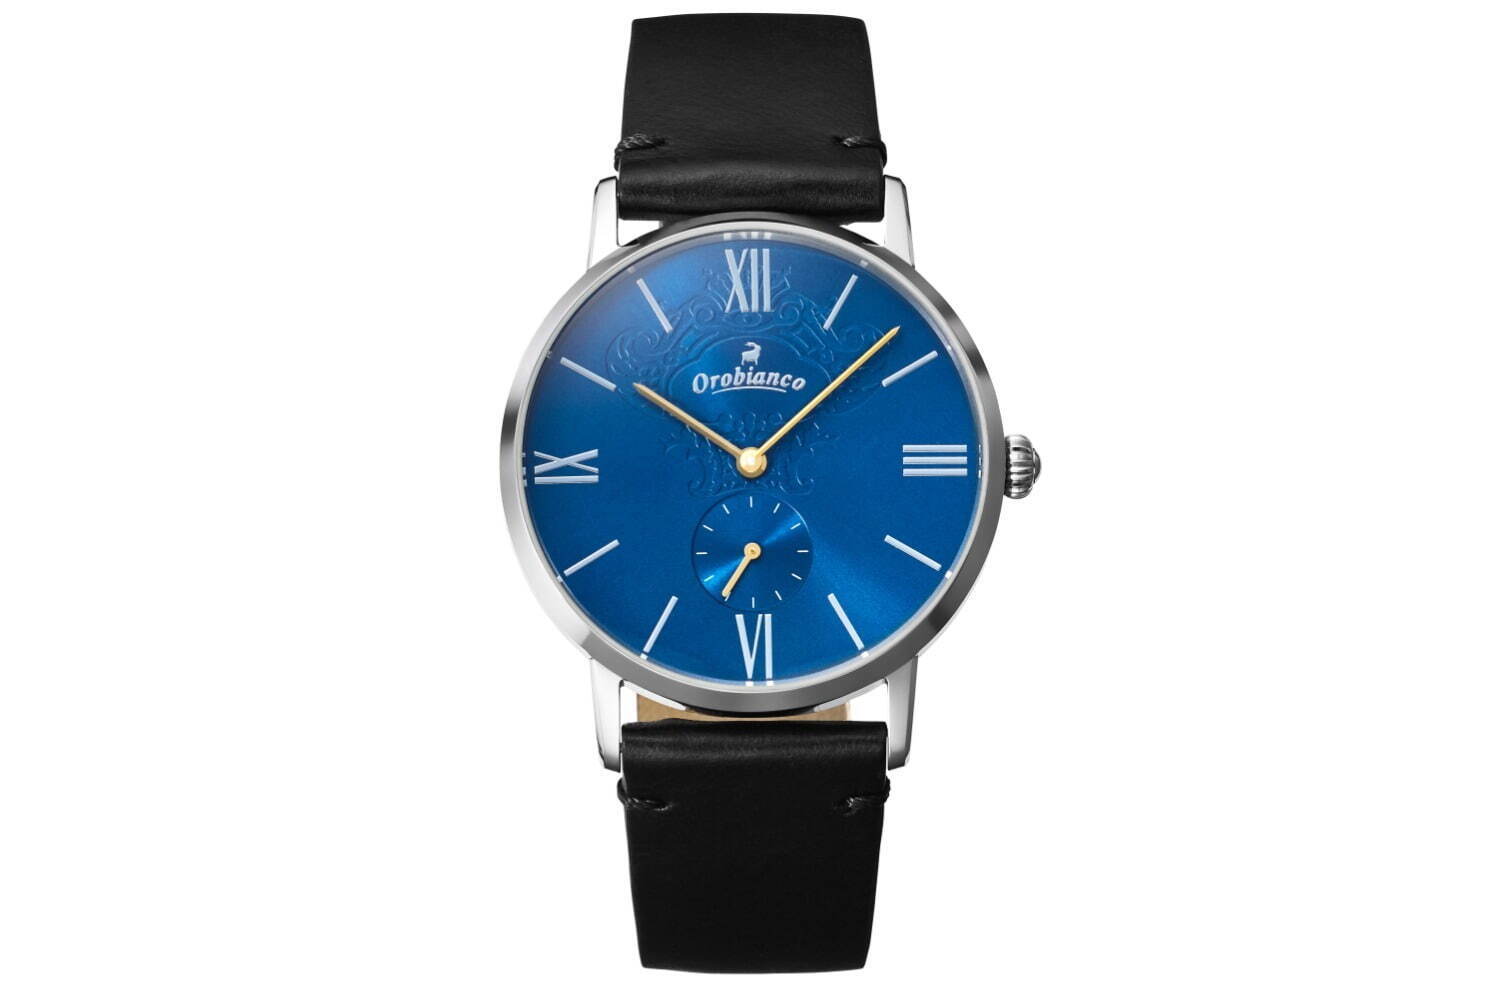 オロビアンコ25周年腕時計は夜空のような青色文字盤×漆黒ベルト - ザ 